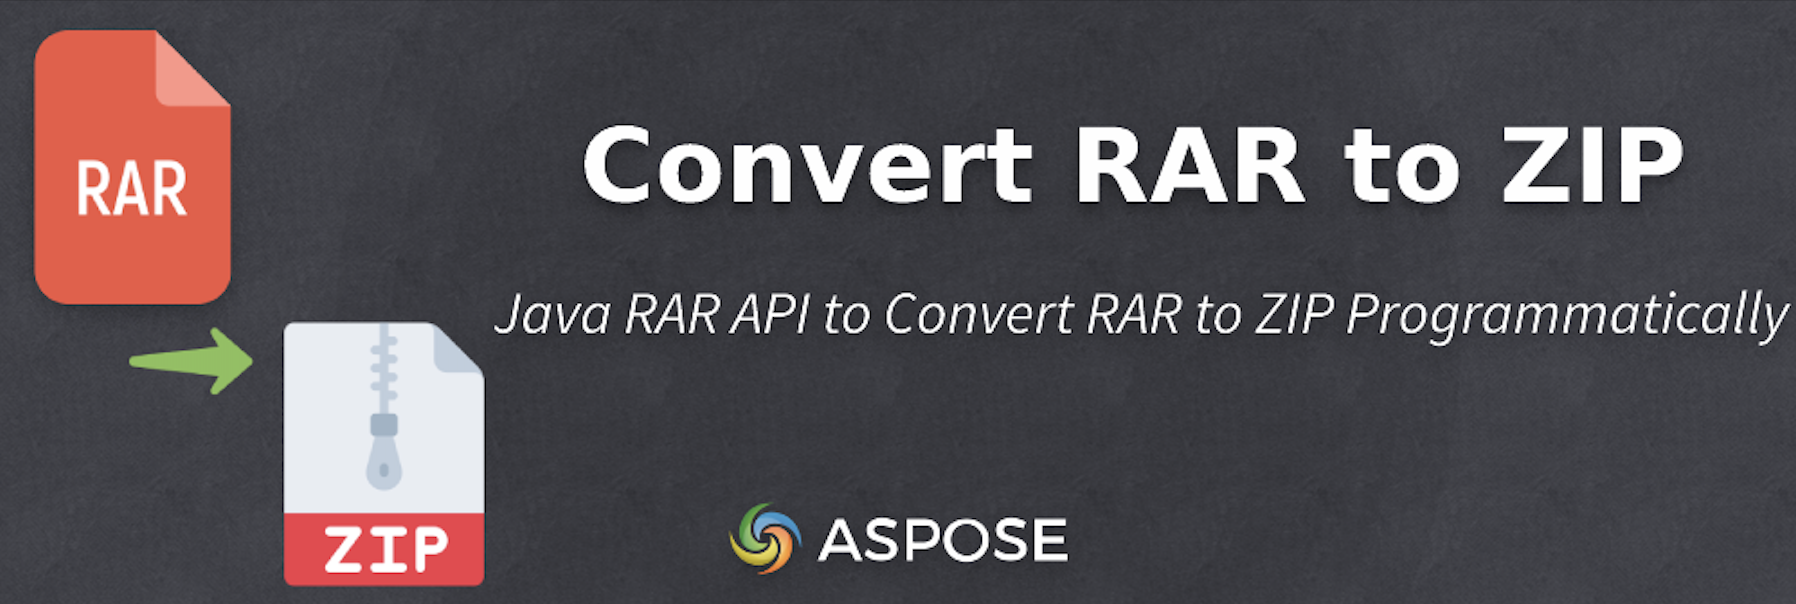 Convertir RAR a ZIP en Java - API RAR de Java